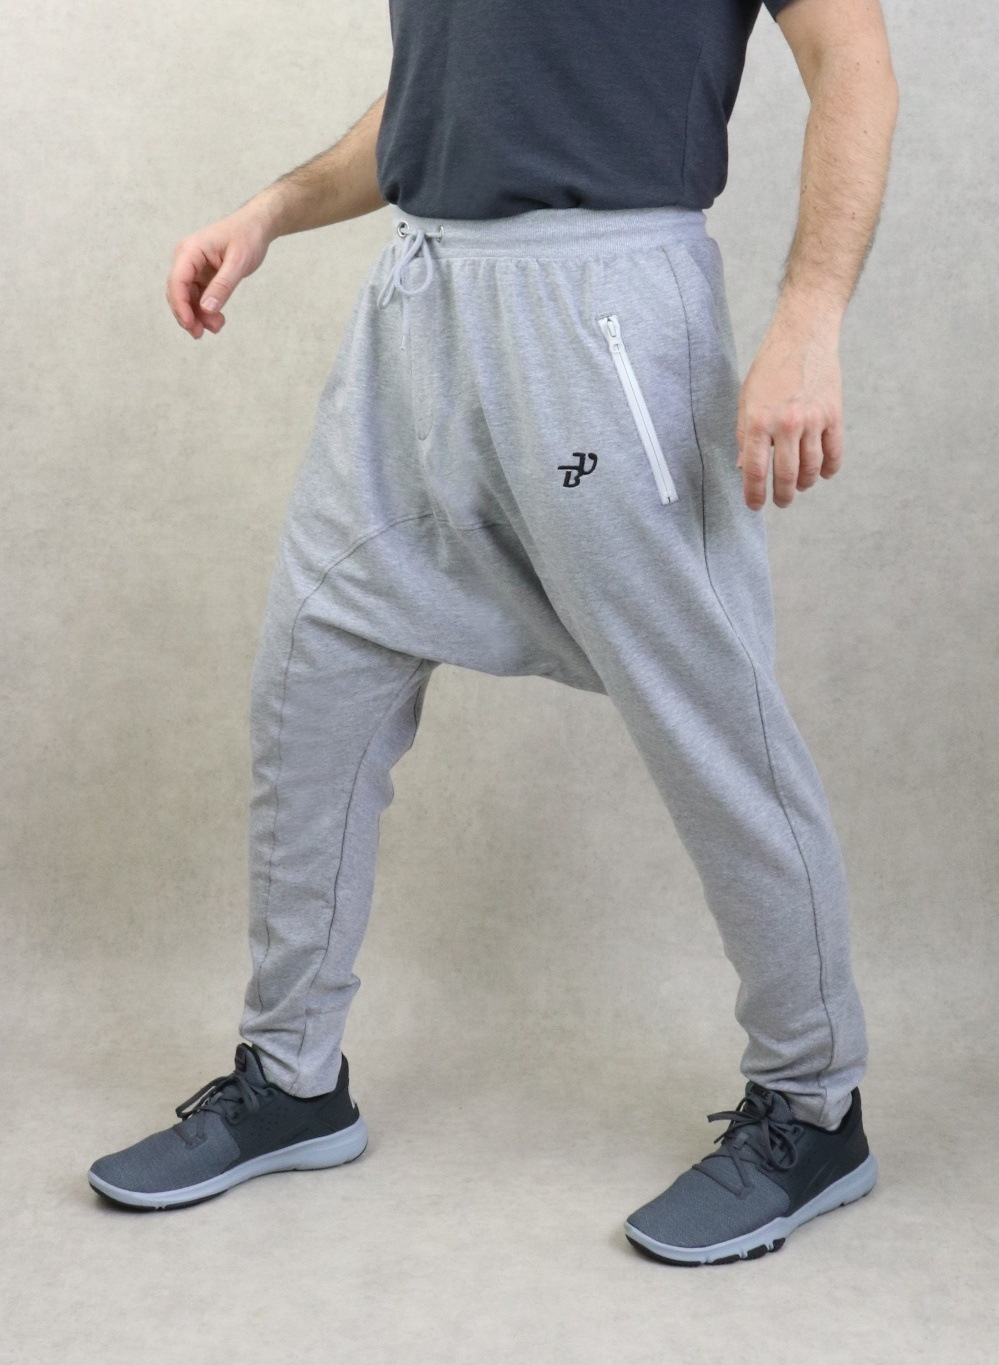 Pantalon jogging Seroual léger poches zip blanches pour homme - Sarouel  Marque Best Ummah - Couleur Gris clair chiné